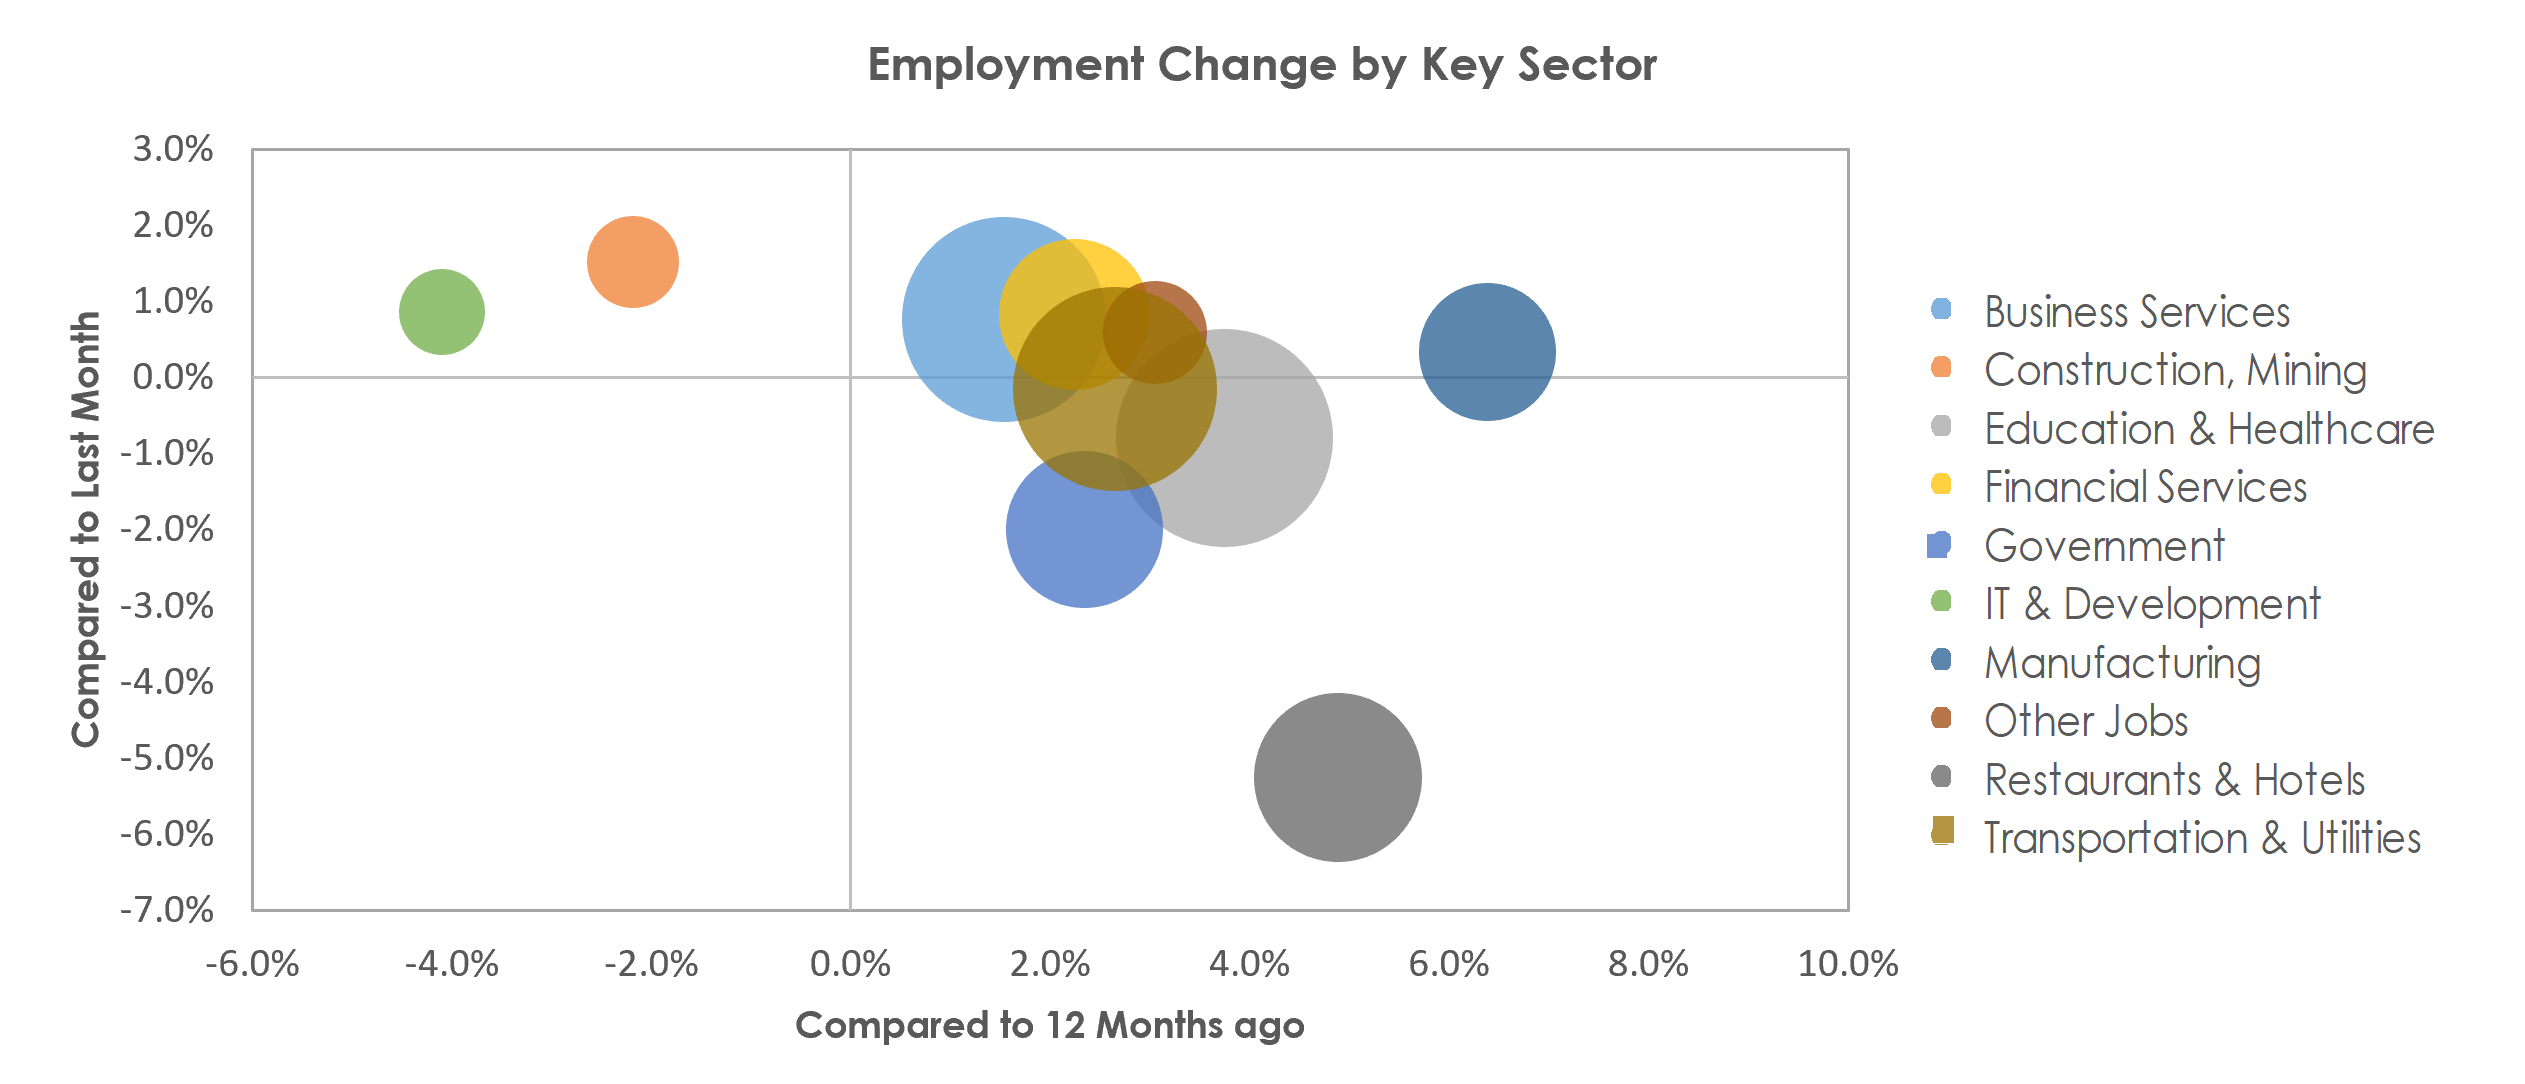 Bridgeport-Stamford-Norwalk, CT Unemployment by Industry August 2022